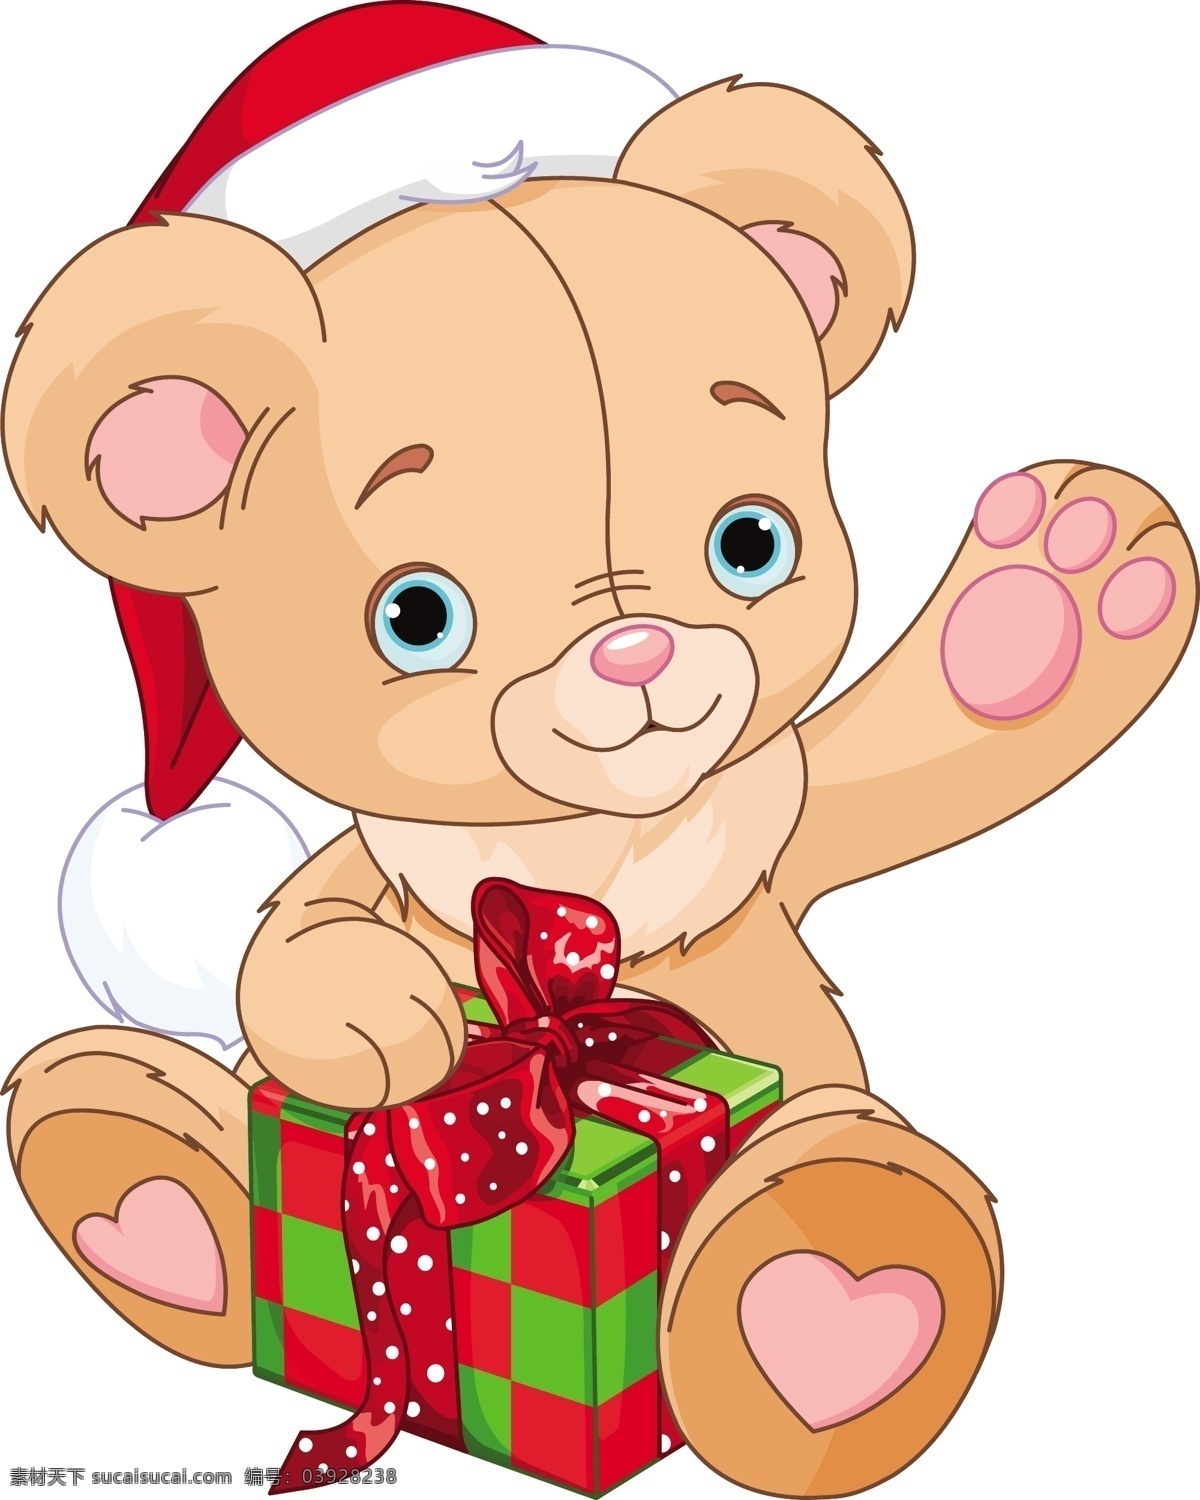 背景 节日素材 卡通 可爱 圣诞 圣诞节 圣诞小熊 圣诞主题 时尚 小 熊 矢量 模板下载 小熊 手绘